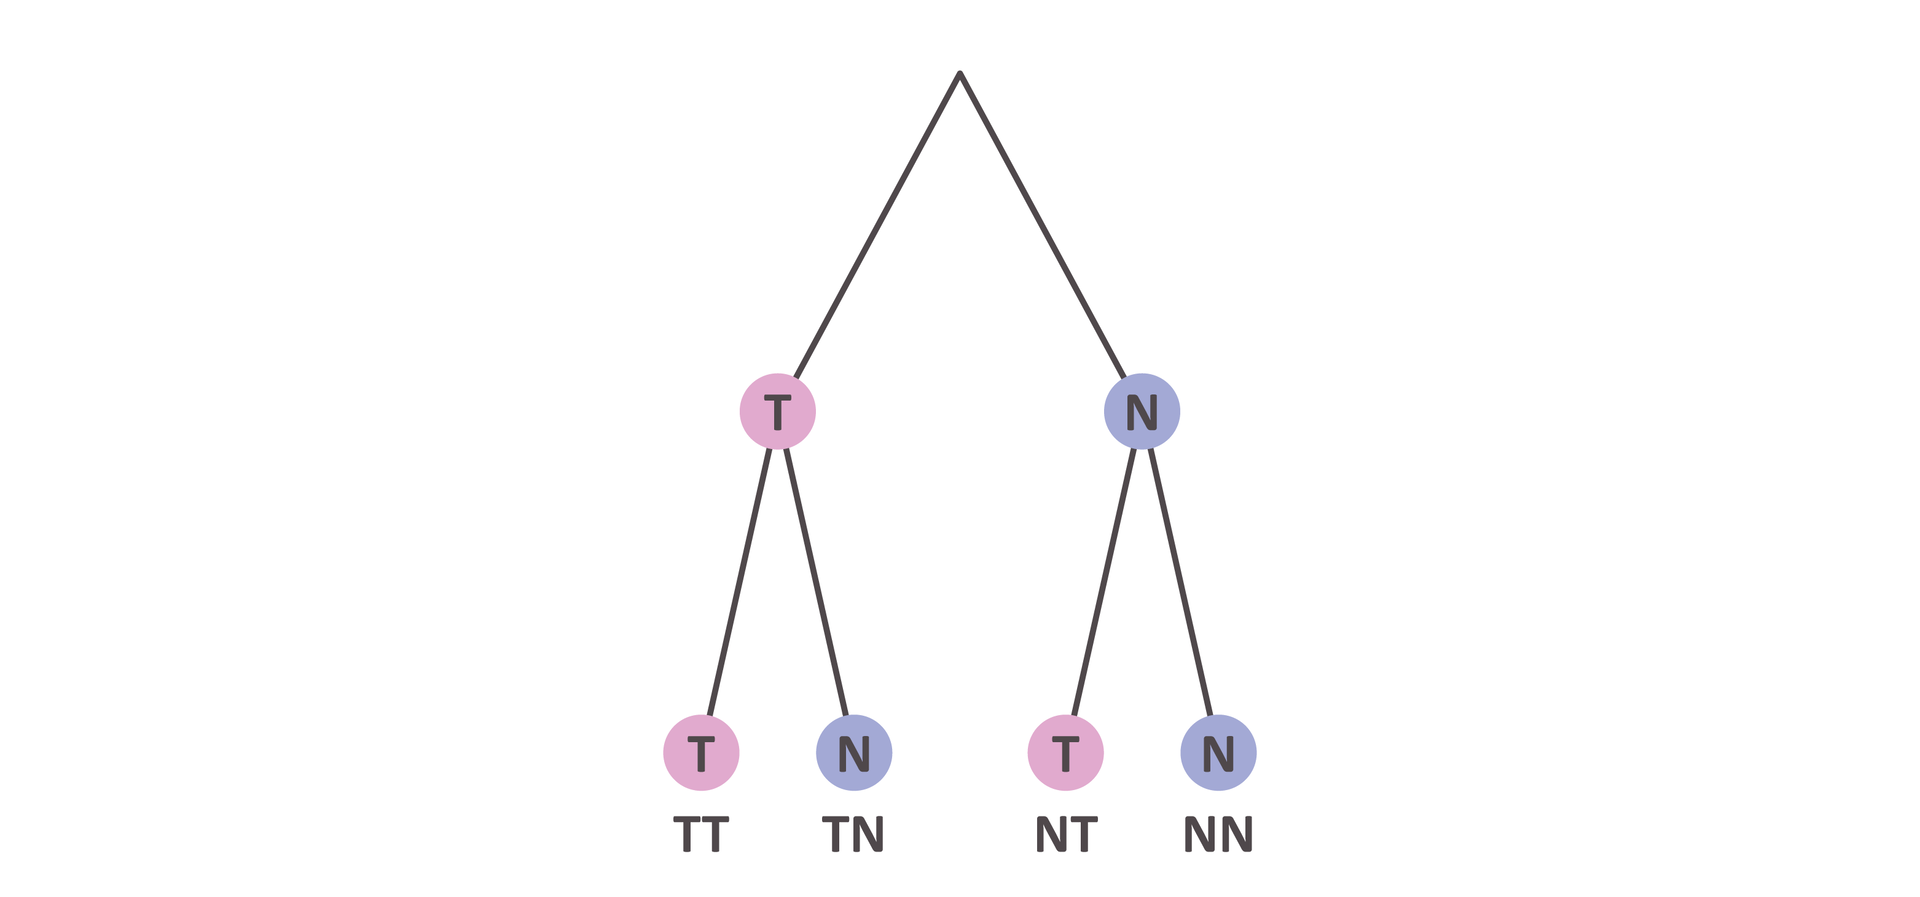 Ilustracja przedstawia drzewo decyzyjne. Na górze pojawiają się dwa zdarzenia T oraz N. Rozdzielają się na dwa osobne zdarzenia T i N. Powstają gałęzie TT, TN, NT oraz NN. 